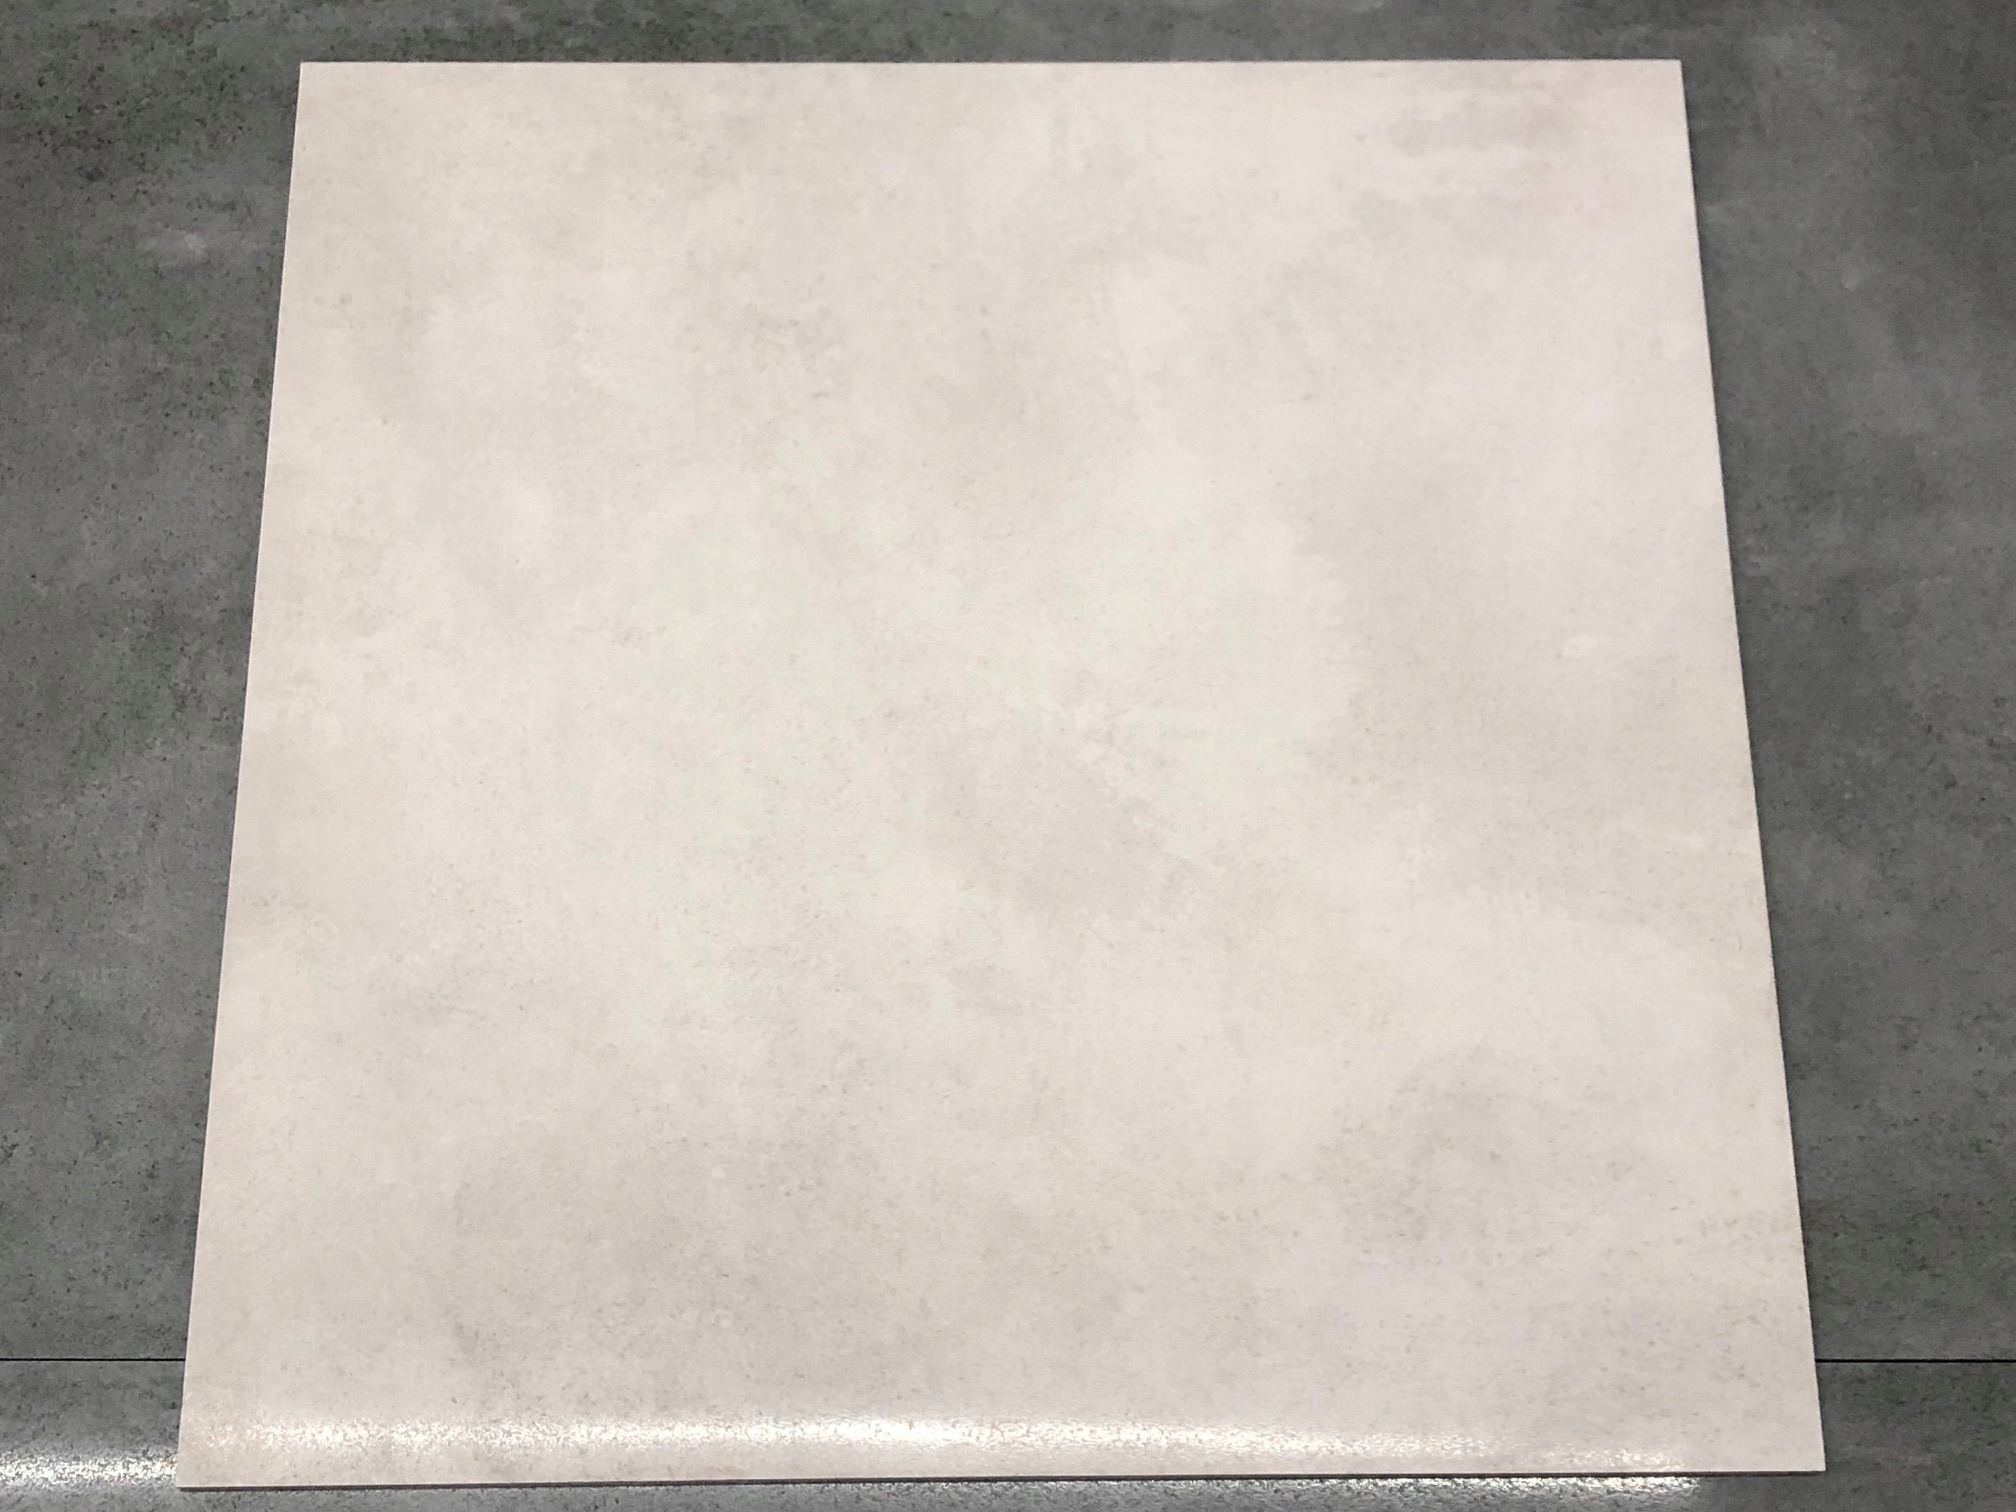 1800 0 2. Керамогранит beton g-1104 60x120 Polished 60x60. Grasaro beton белый 60x60 g-1104/Mr. Beton керамогранит g-1104/CR/60x60 белый. Beton g-1104 CR.